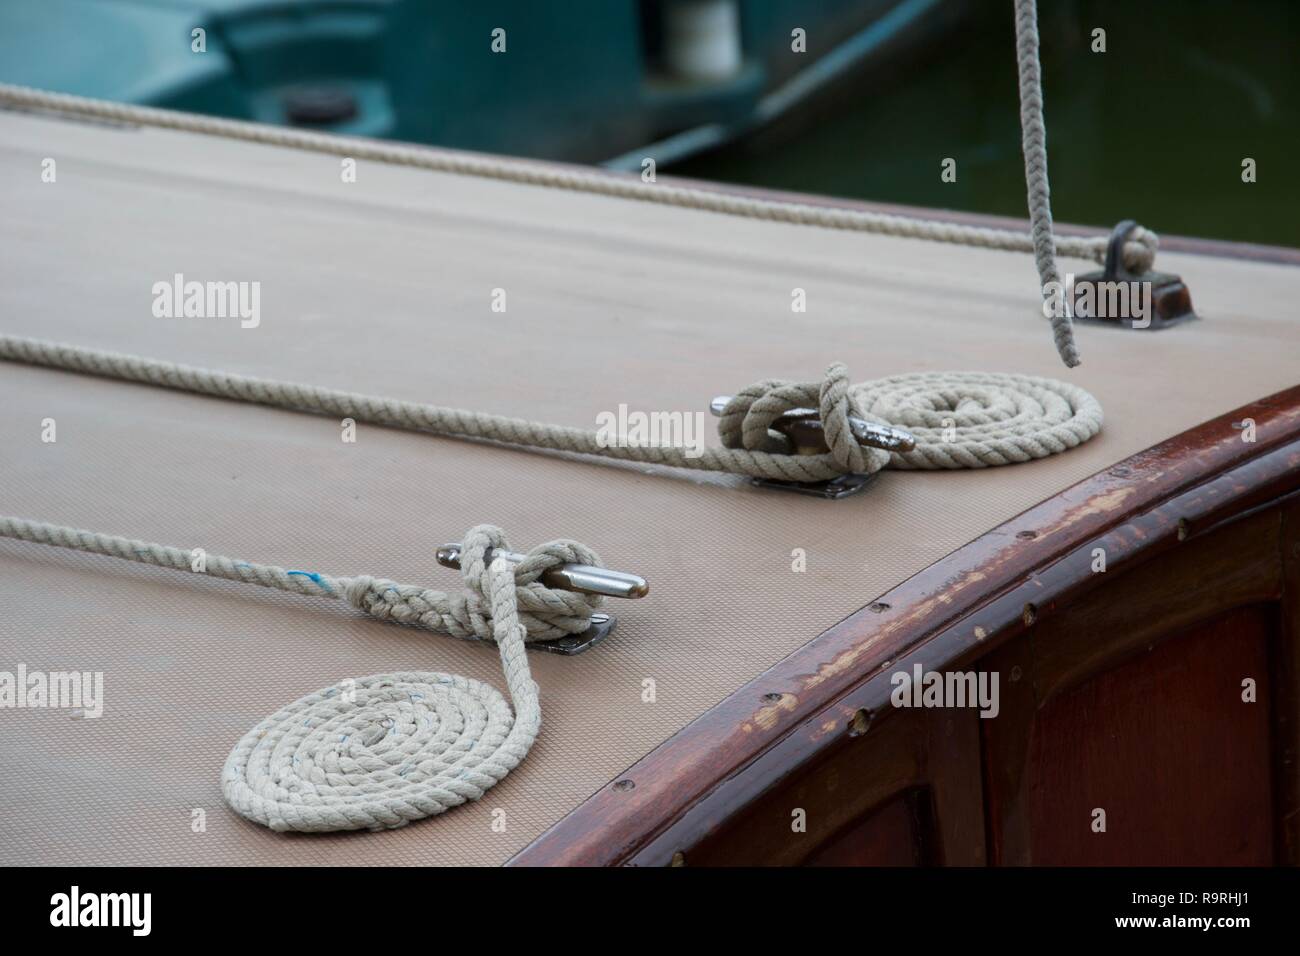 Detail der perfekte, ordentlich aufgerollt Seile neben Stollen auf dem Deck eines hölzernen Boot Stockfoto